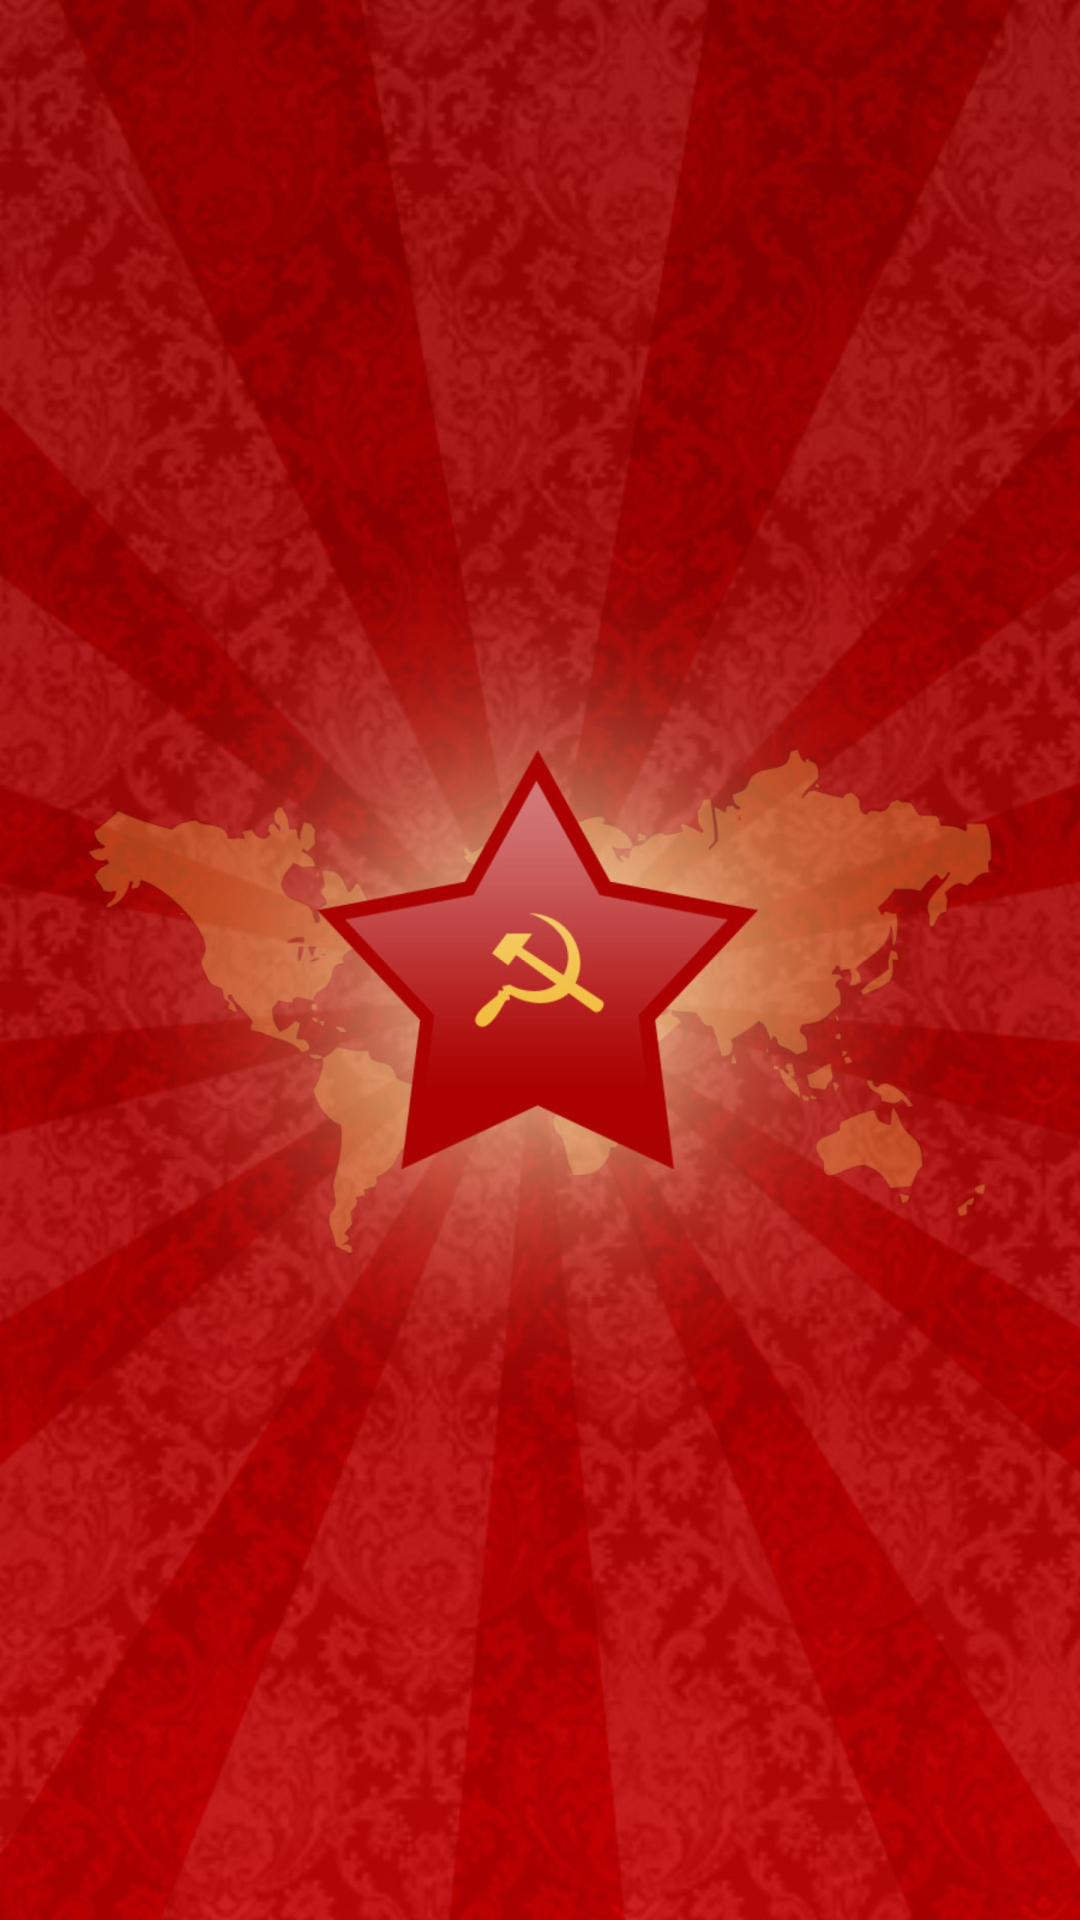 USSR wallpaper 1080x1920